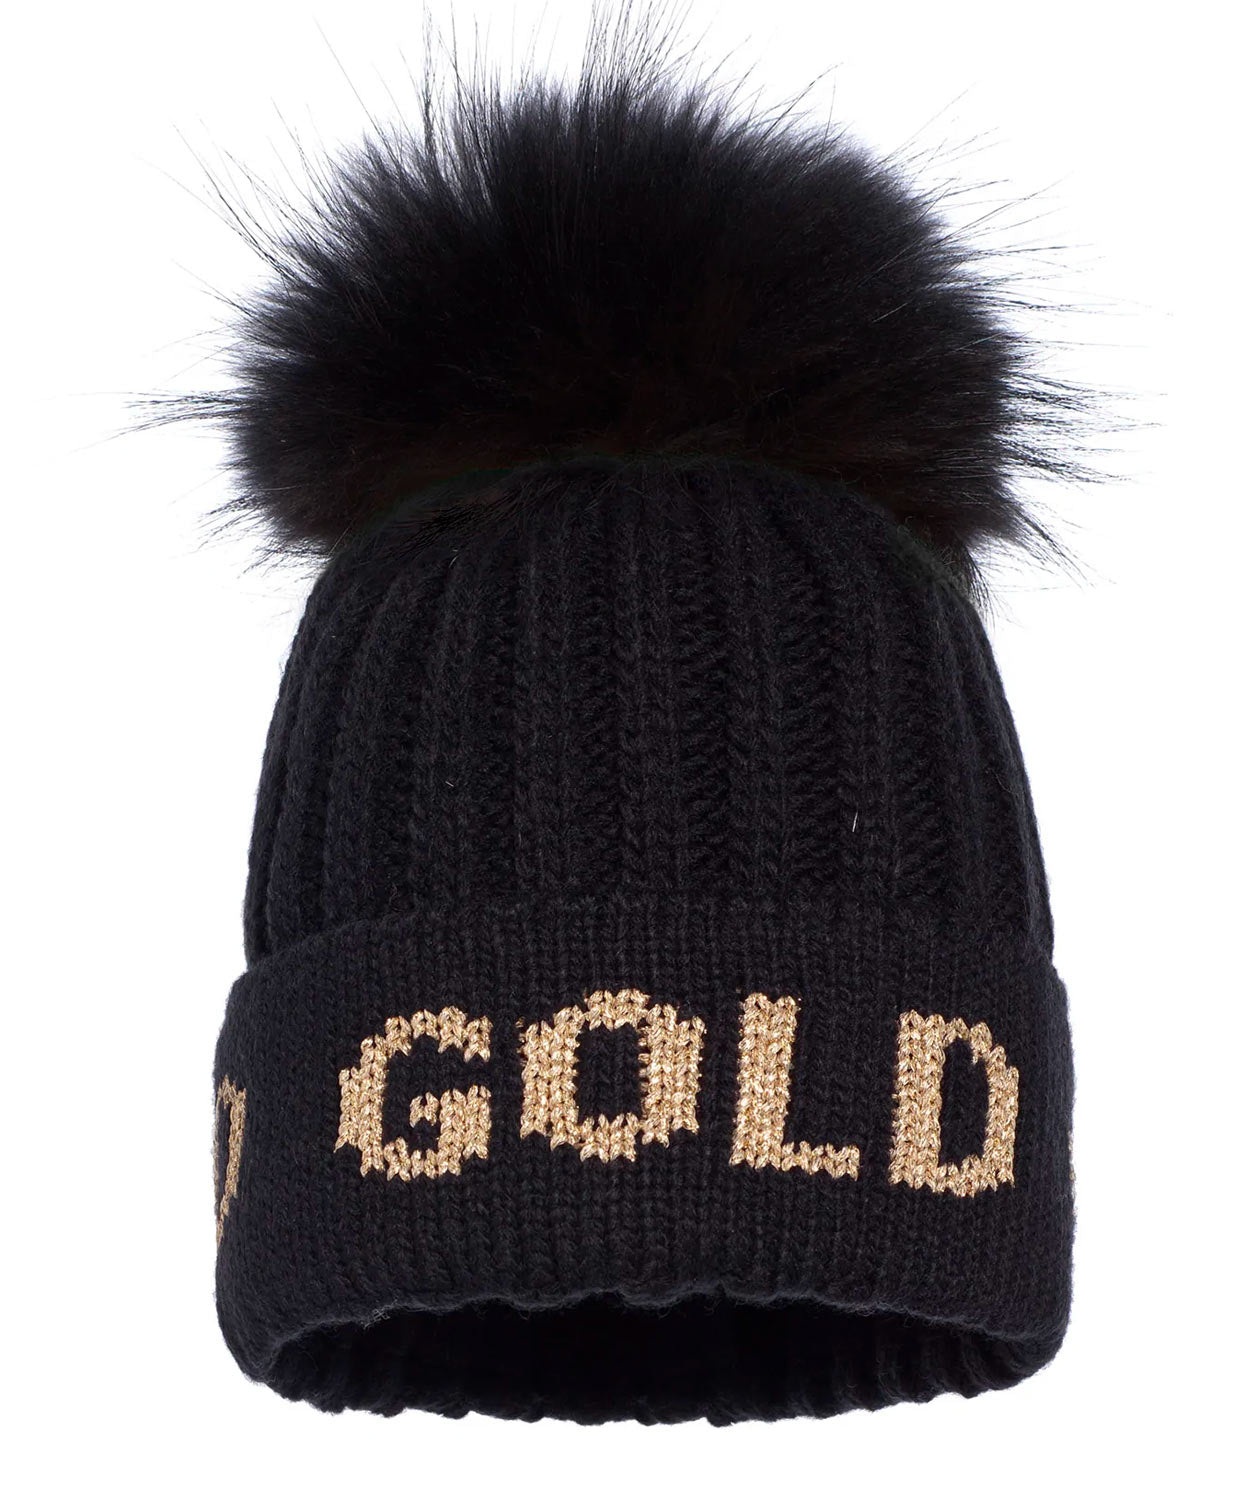 Hodd Beanie Real Raccoon Fur Hats | Beanies Goldbergh Black/Gold OS 